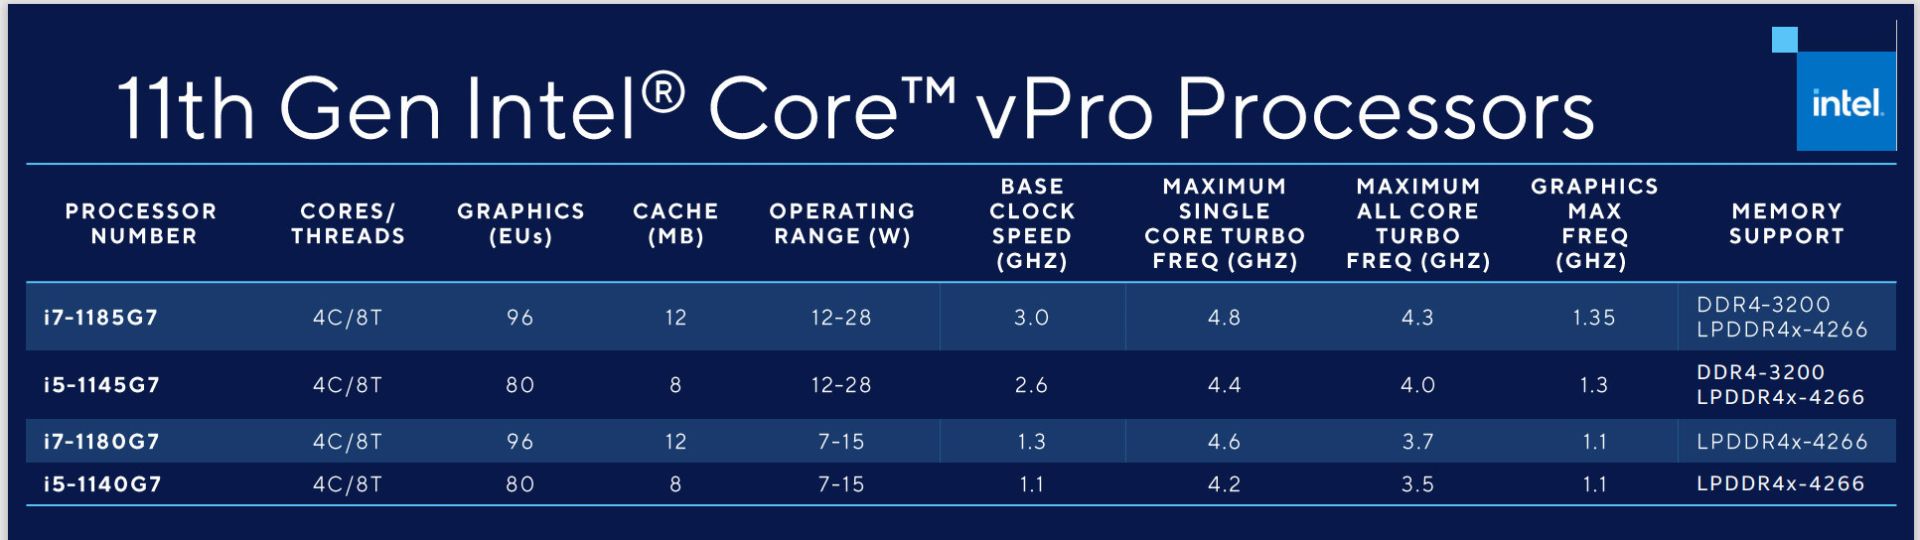 پردازنده های نسل 11 اینتل Core vPro